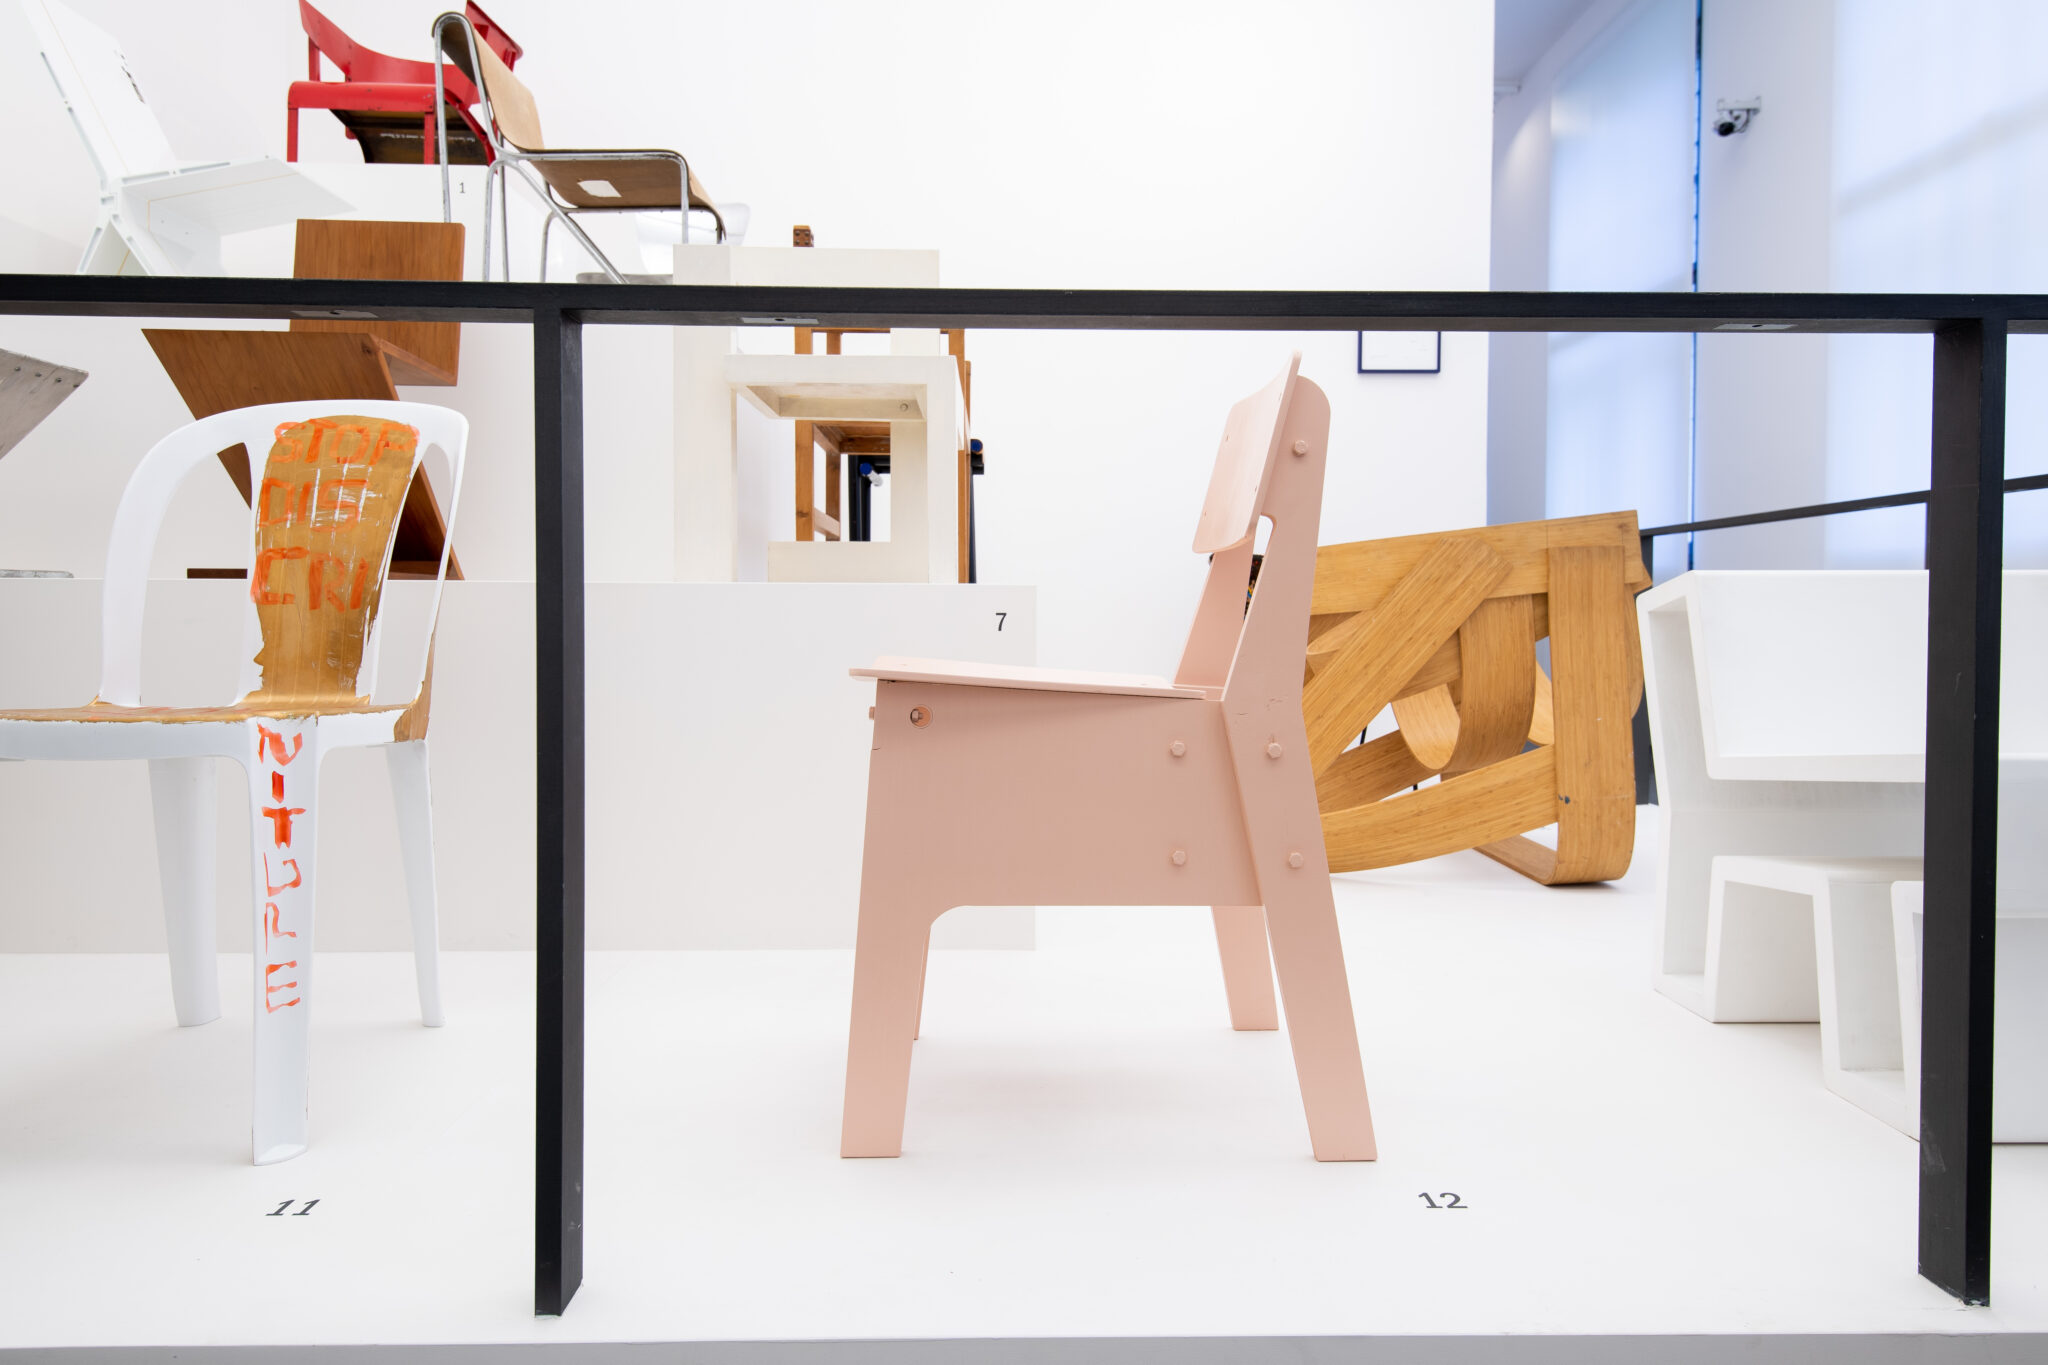 is meer dan royalty Misverstand Coronaroze crisisstoel van Piet Hein Eek in Centraal Museum | Project &  Interieur